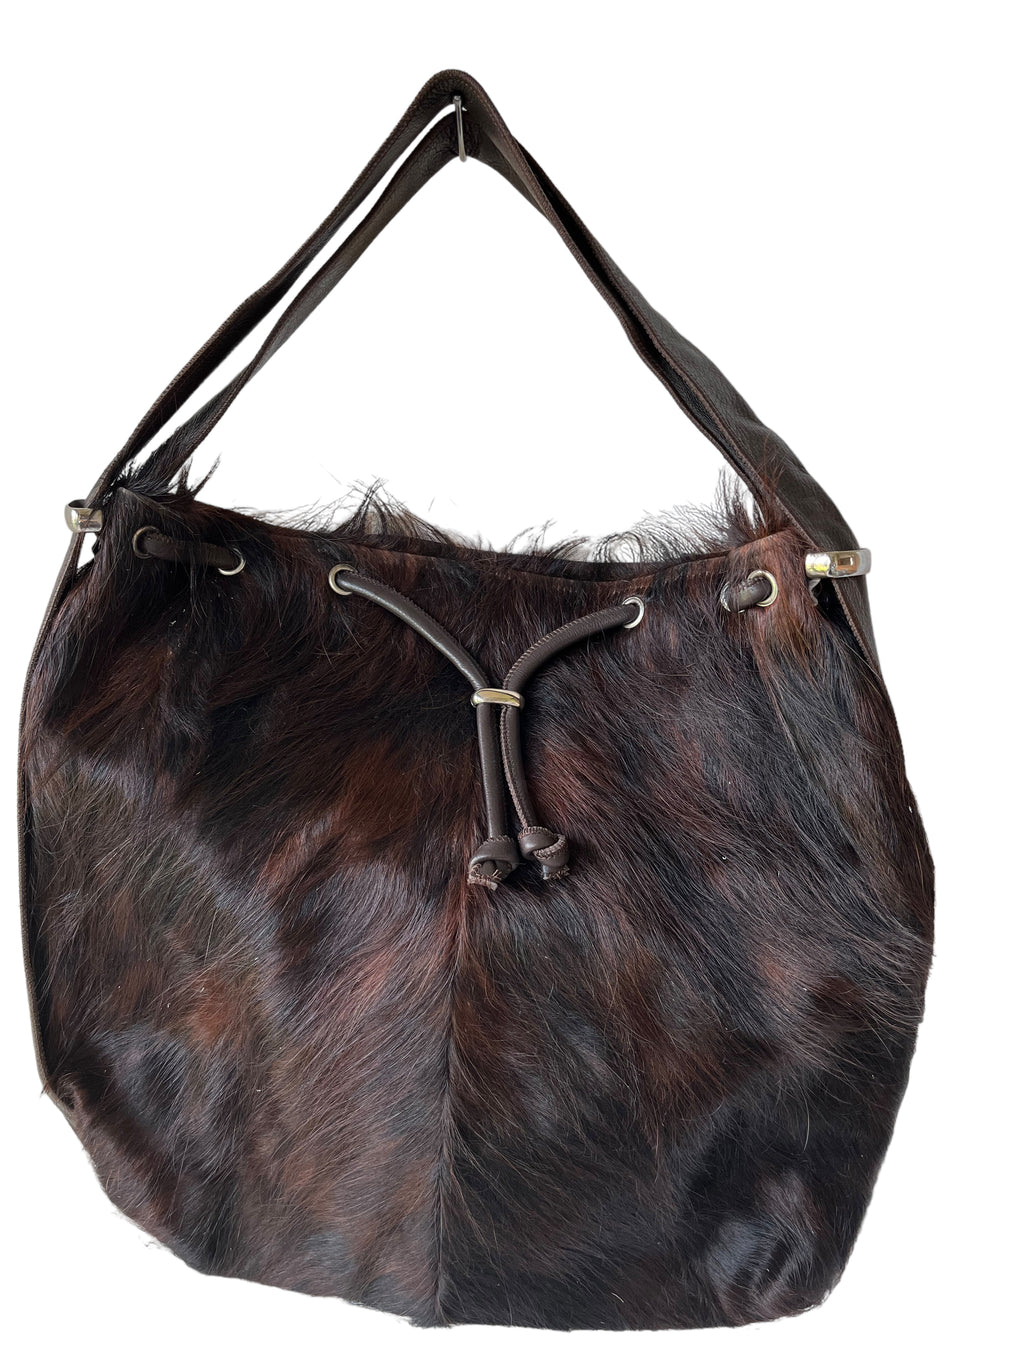 The Huntingdon Brown Cowhide Bag